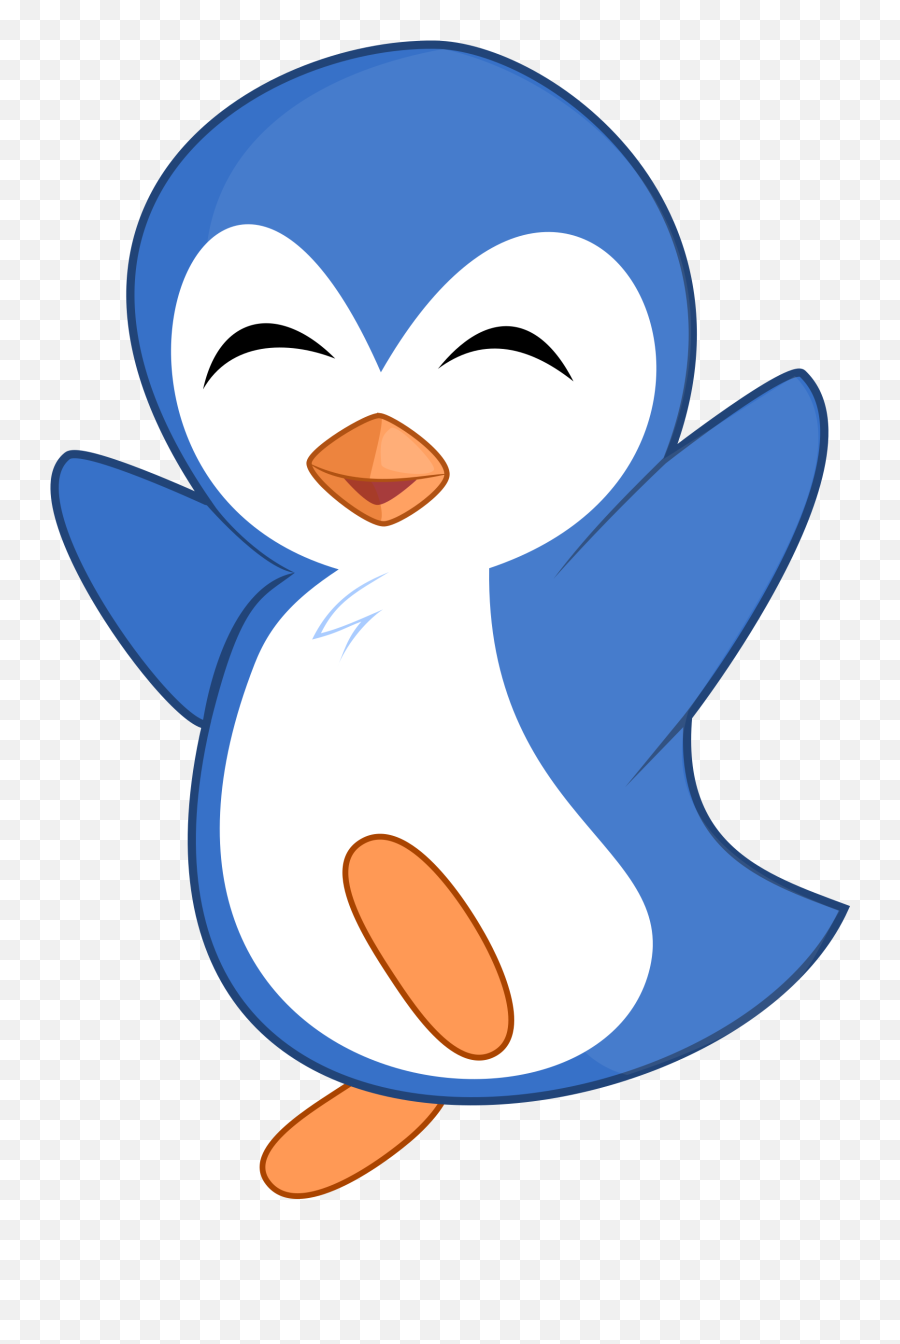 Clipart Images Penguin Clipart Images Penguin Transparent - Blue Penguin Clipart Emoji,Penguin Clipart